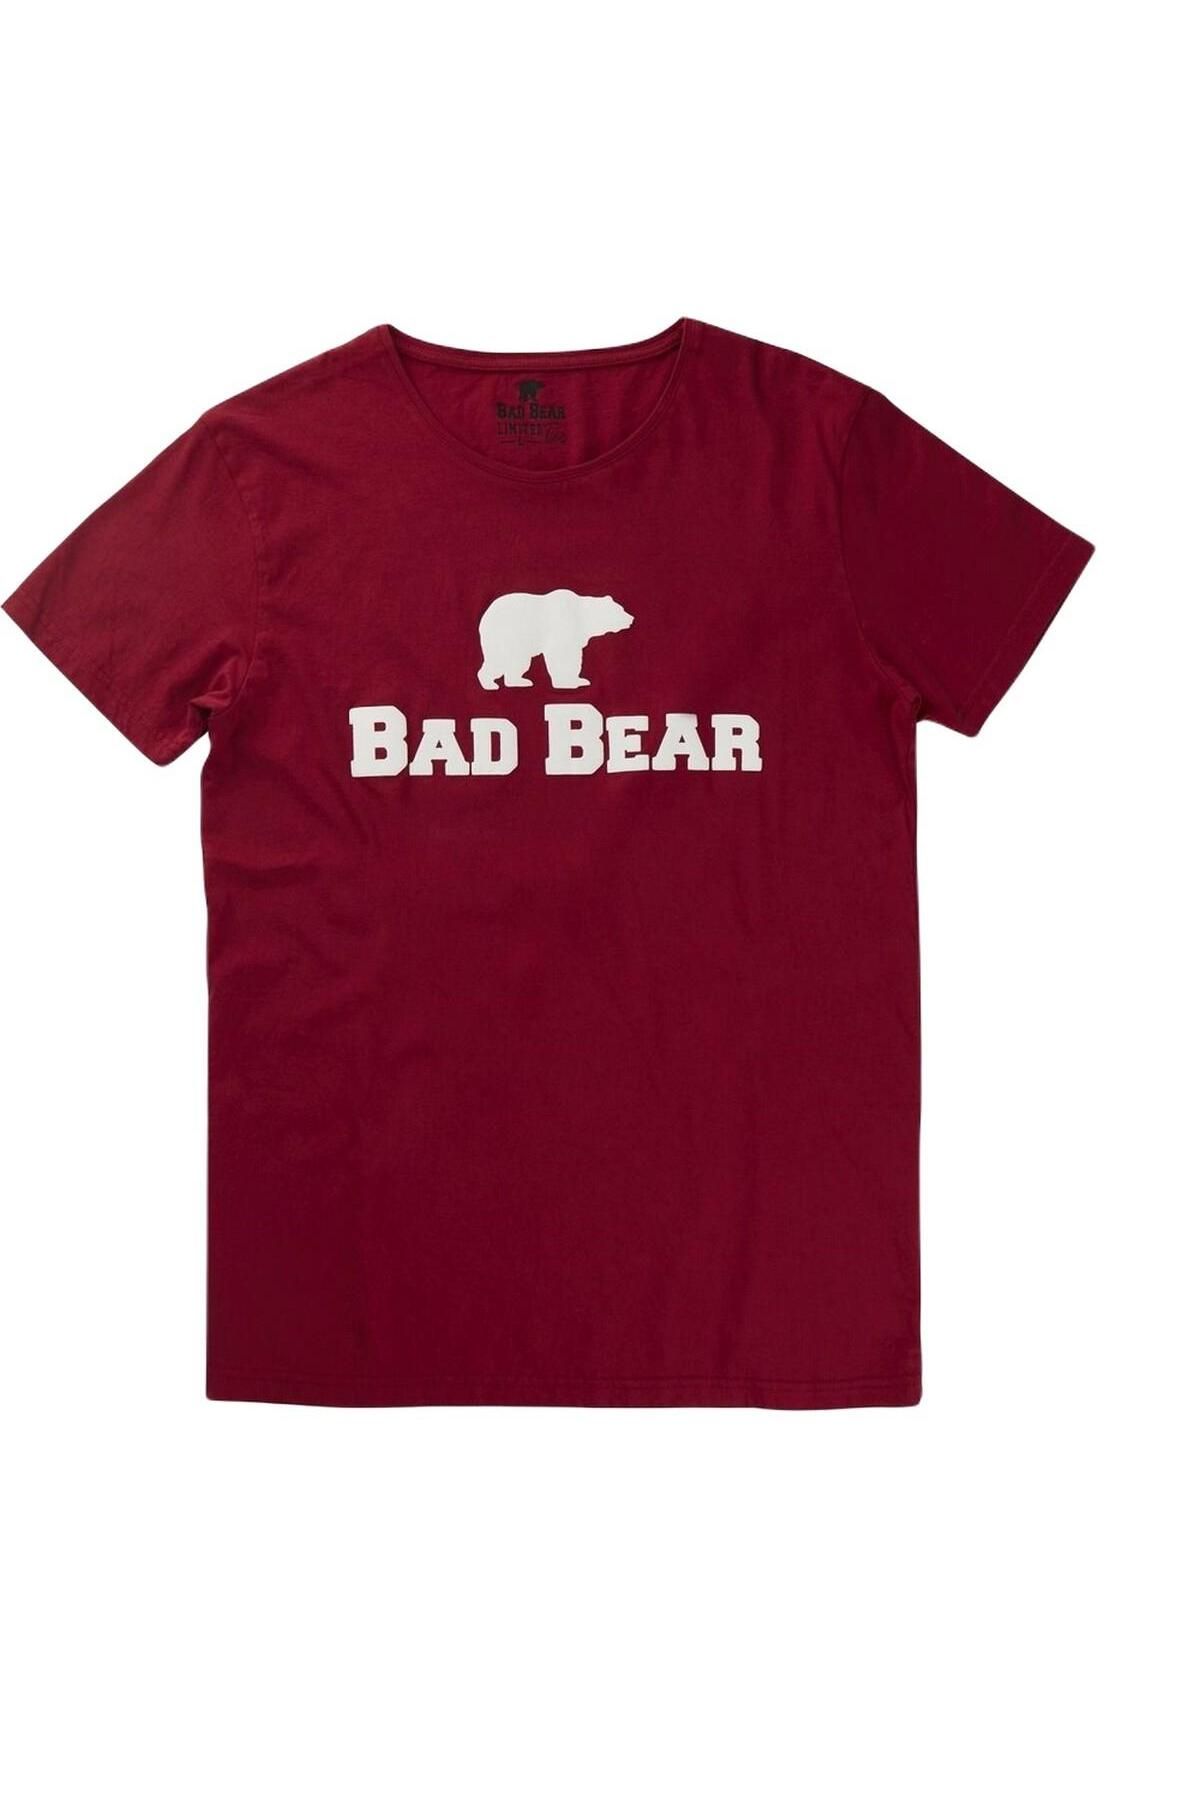 Bad Bear 19.01.07.002-c54 Tee Erkek T-shirt